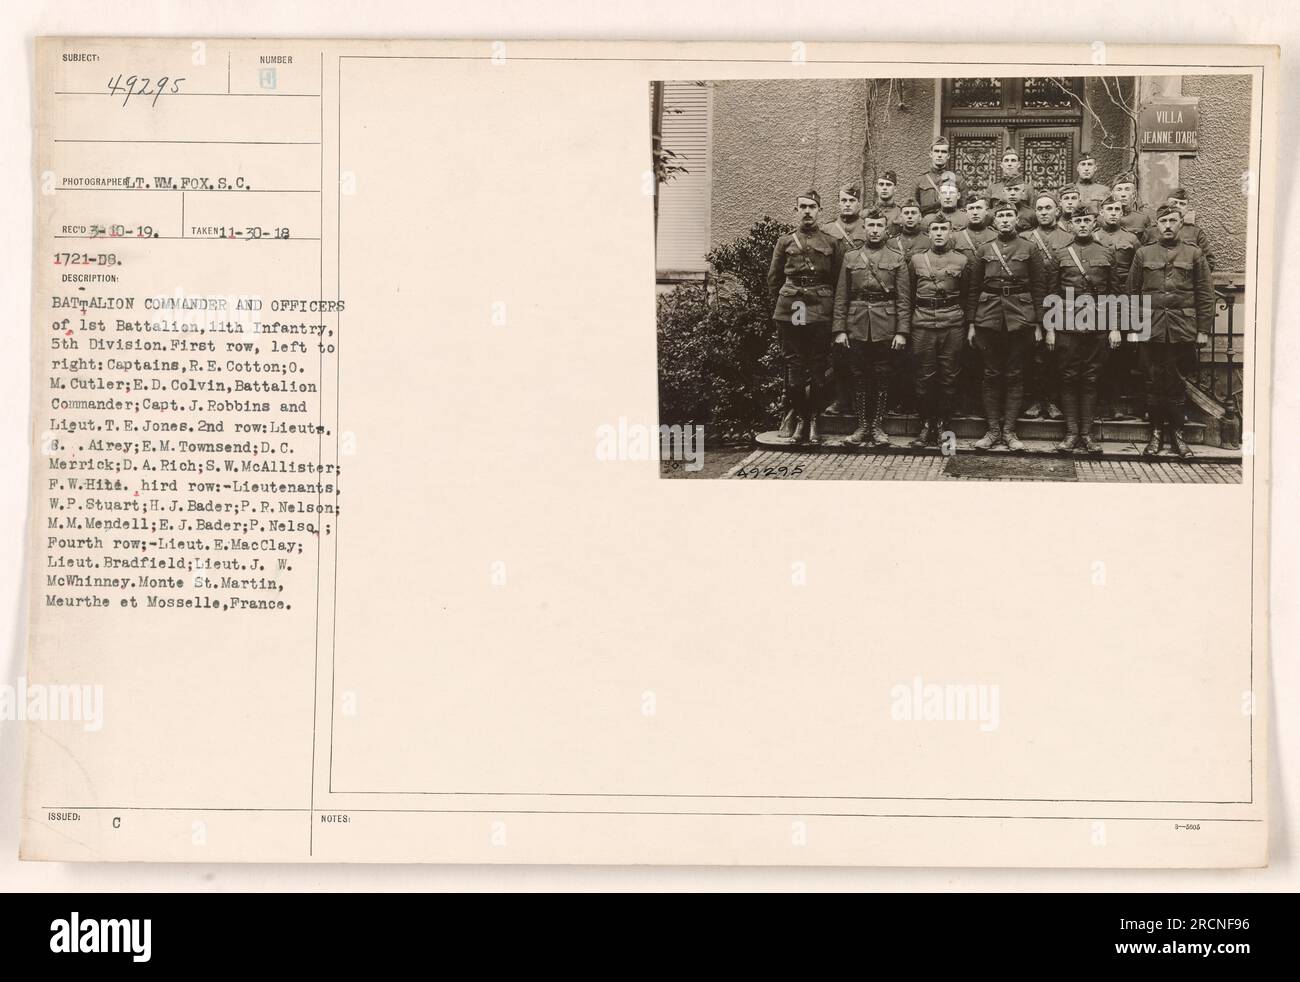 Bataillonskommandeur und Offiziere des 1. Bataillons, 11. Infanterie, 5. Division, stehen für ein Foto. Erste Reihe, von links nach rechts: Captains R. E. Cotton, O. M. Cutler, E. D. Colvin (Bataillonskommandeur), Capt. J. Robbins und Ligut. T. E. Jones. Zweite Reihe: Lieute. 8. Airey, E. M. Townsend, D. C. Merrick, D. A. Rich, S. W. McAllister, F. W. Hite. Dritte Reihe: Leutenants W. P. Stuart, H. J. Bader, P. P. Nelson, M. M. Mendel1, E. J. Bader, P. Nelsa. Vierte Reihe: Lieut. E.Macclay, Lieut. Bradfield, Lieut. J. W. McWhinney. Aufgenommen in der Monte Street Martin, Meurthe et Moselle, Frankreich." Stockfoto